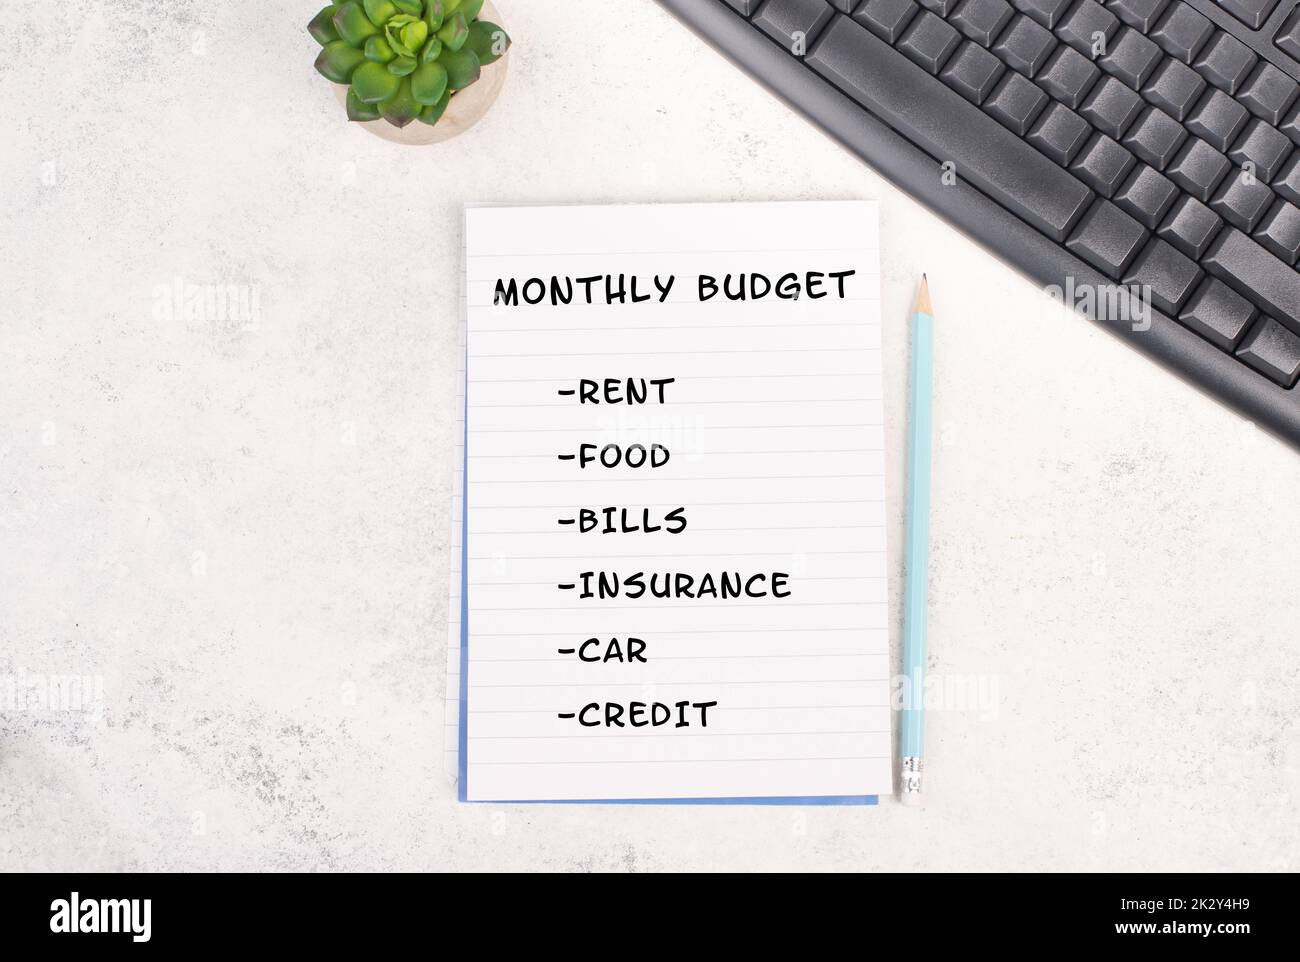 Liste mit dem monatlichen Budget für Miete, Lebensmittel, Versicherung, Bezahlung von Rechnungen und Krediten, Finanzplanung, Berechnung der Ausgaben, Erhöhung der Lebenshaltungskosten durch Inflation Stockfoto